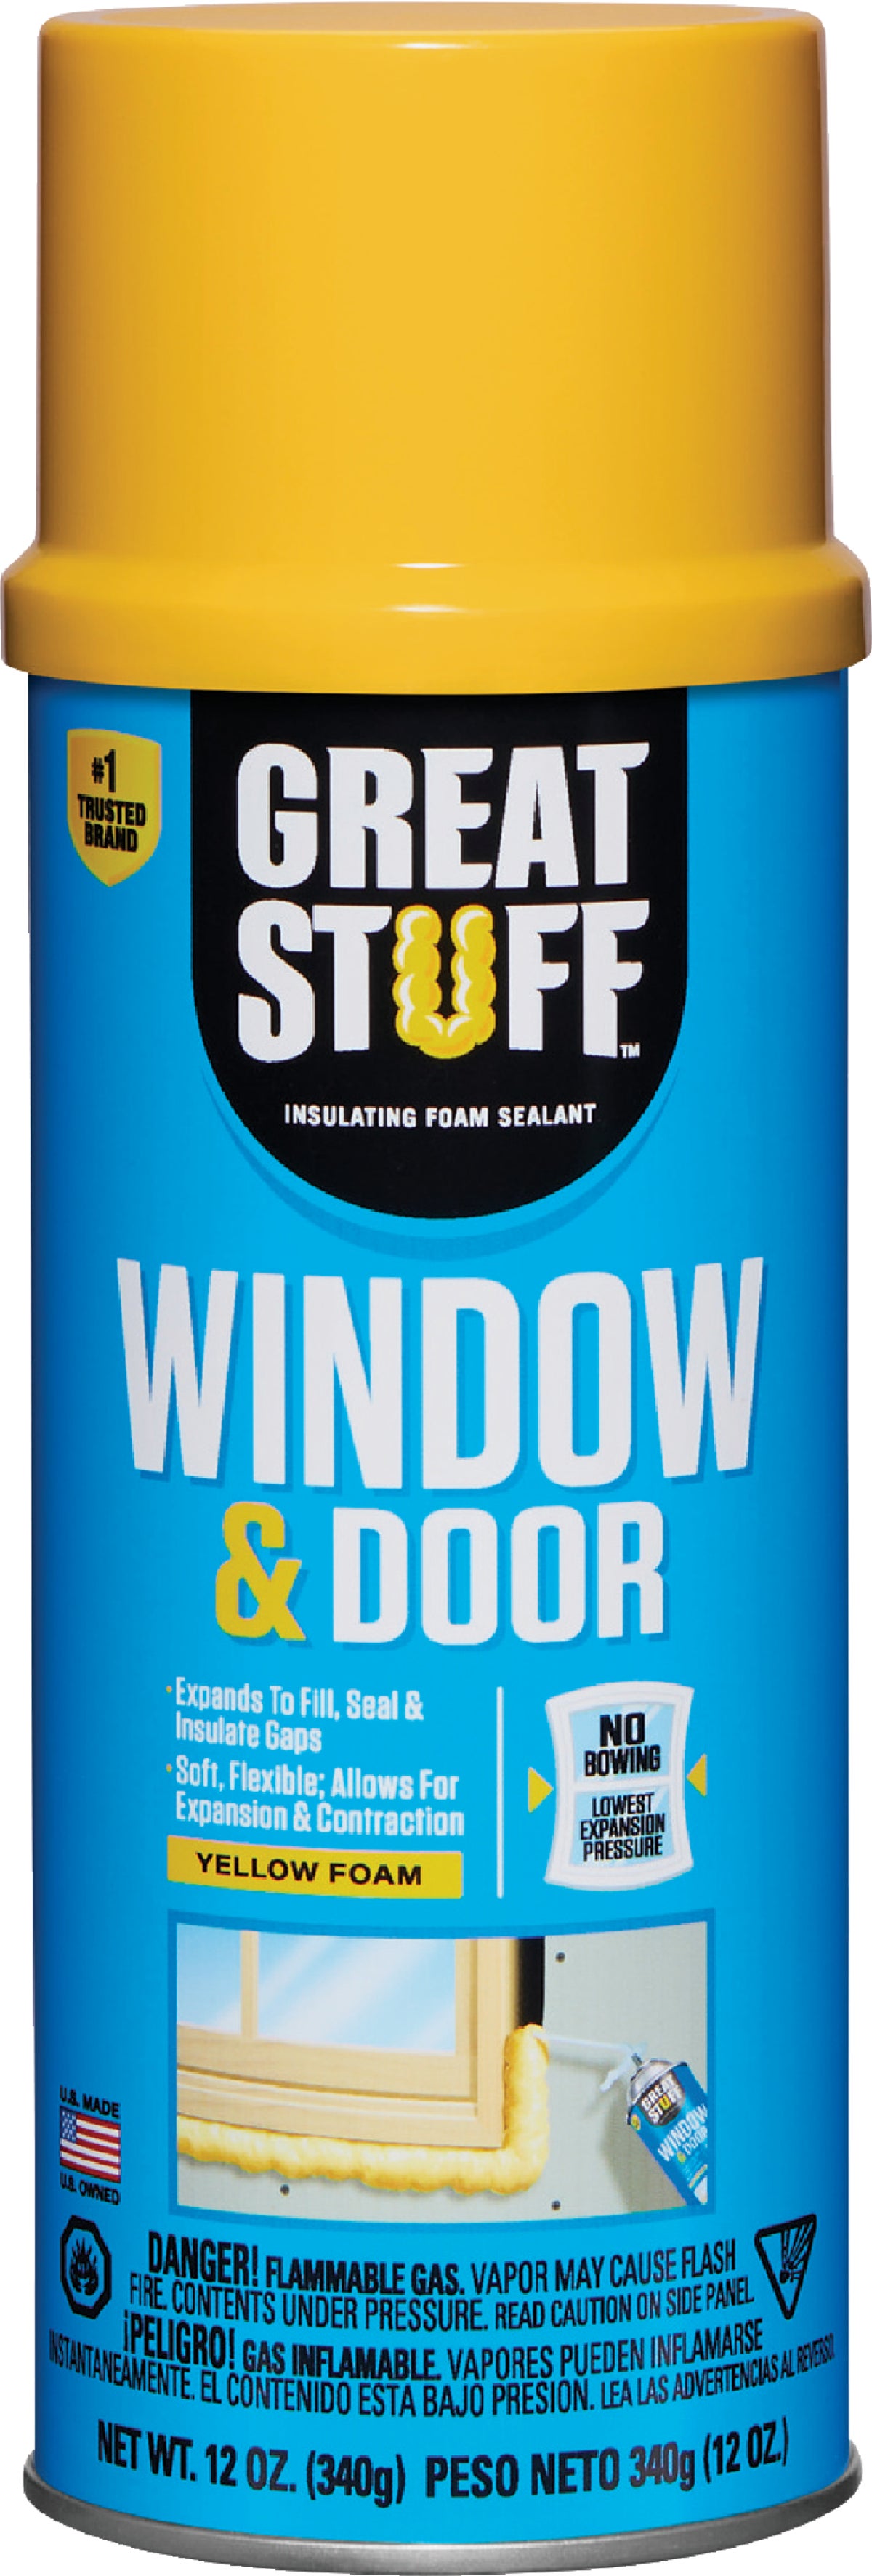 Great Stuff Window & Door 12oz. Insulating Foam Sealant